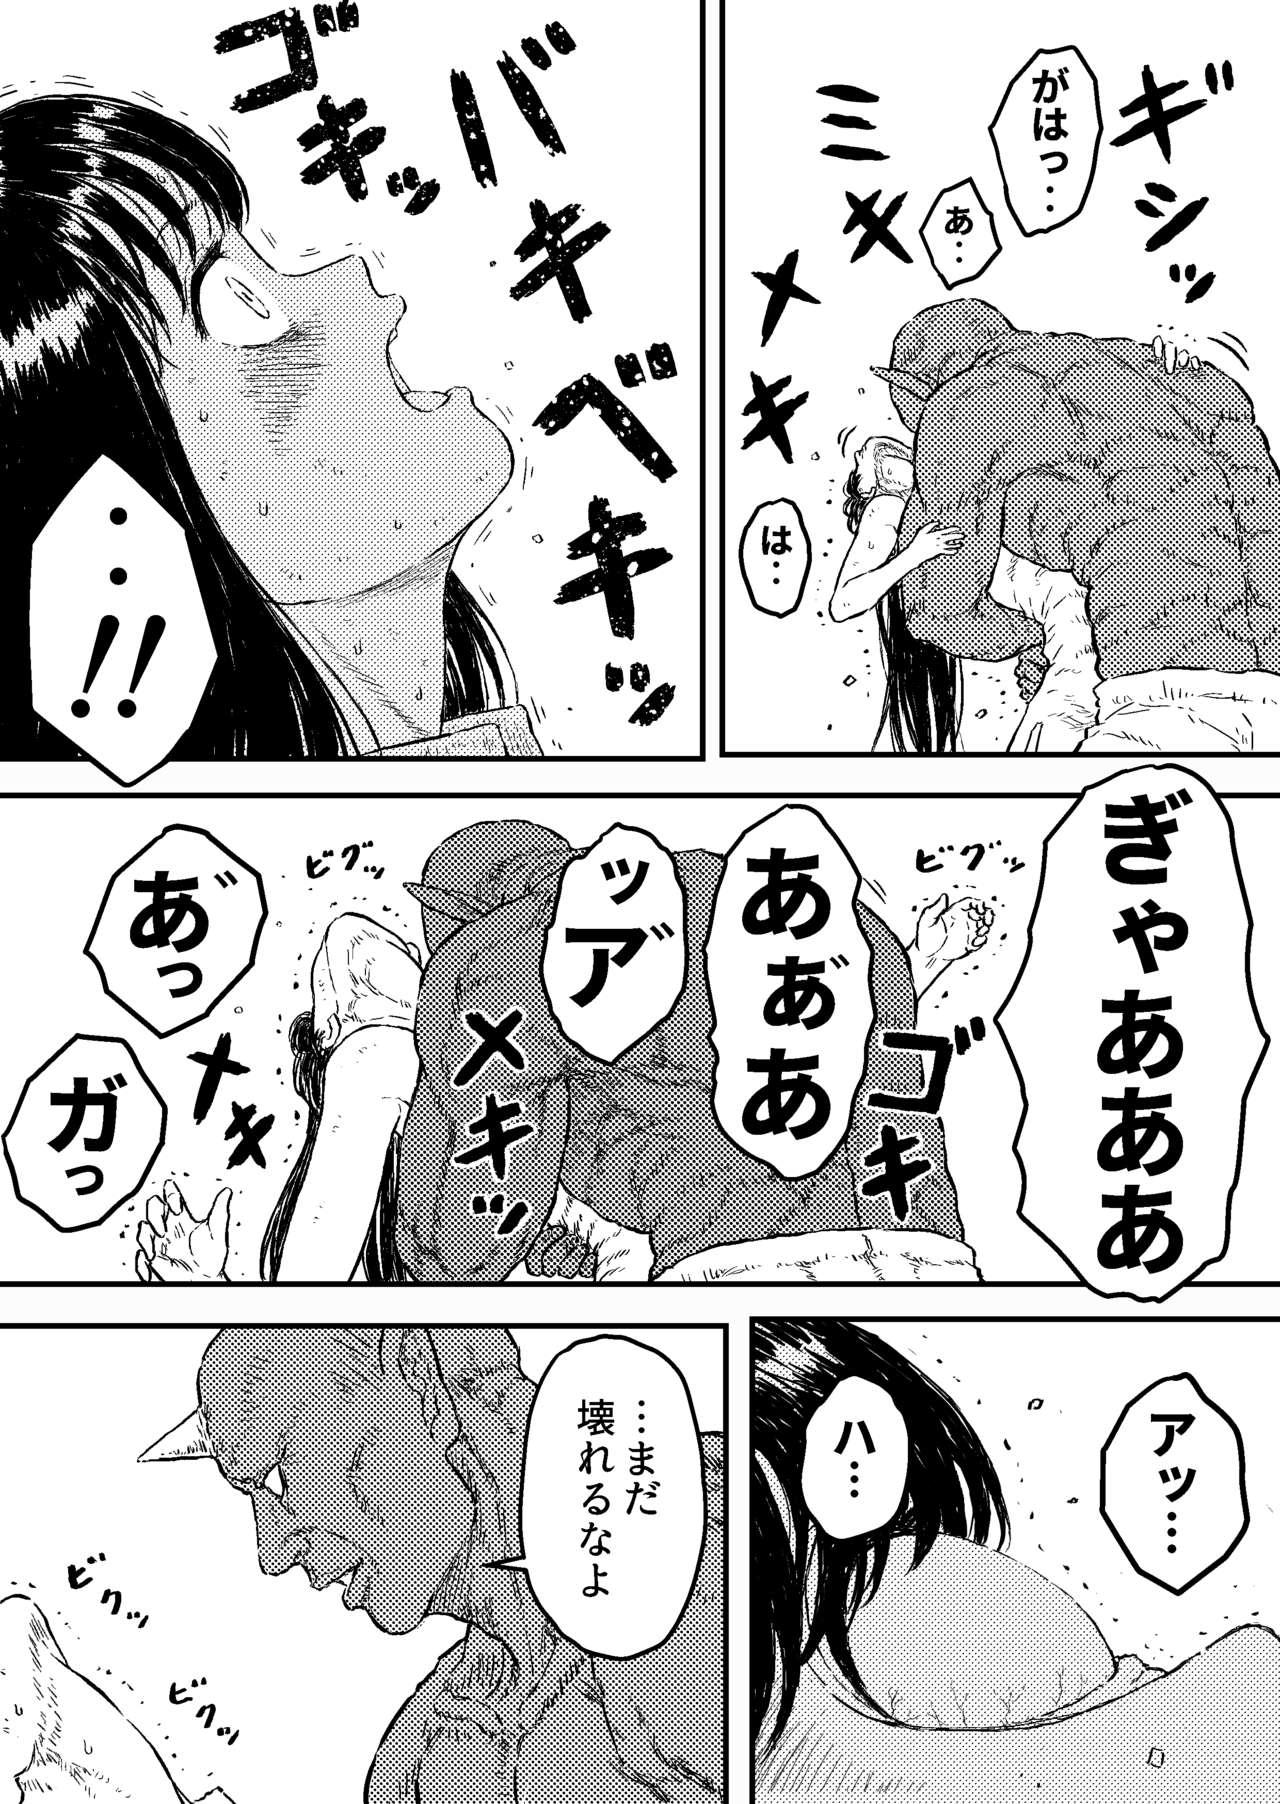 Edging Sutoranguru Gold 4 『Seigi no hiroin kosatsu subete o kake te tataka ta shojo no unmei』 - Original Ass Licking - Page 7